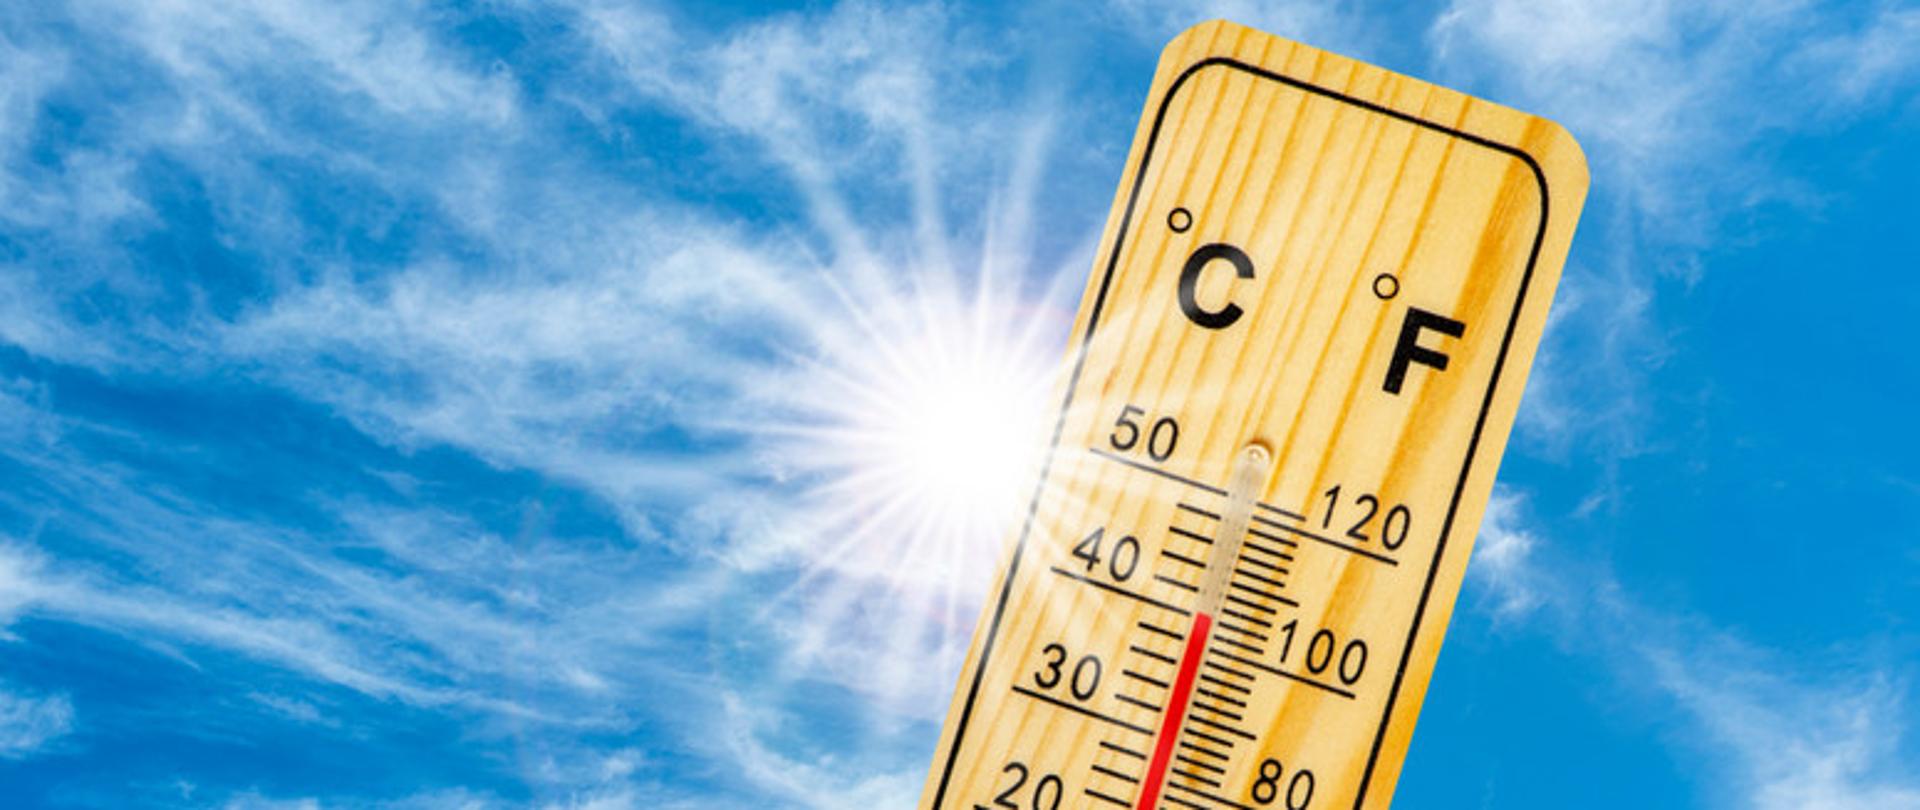 Zdjęcie przedstawia termometr wskazujący wysoką temperaturę, na tle niebieskiego słonecznego nieba